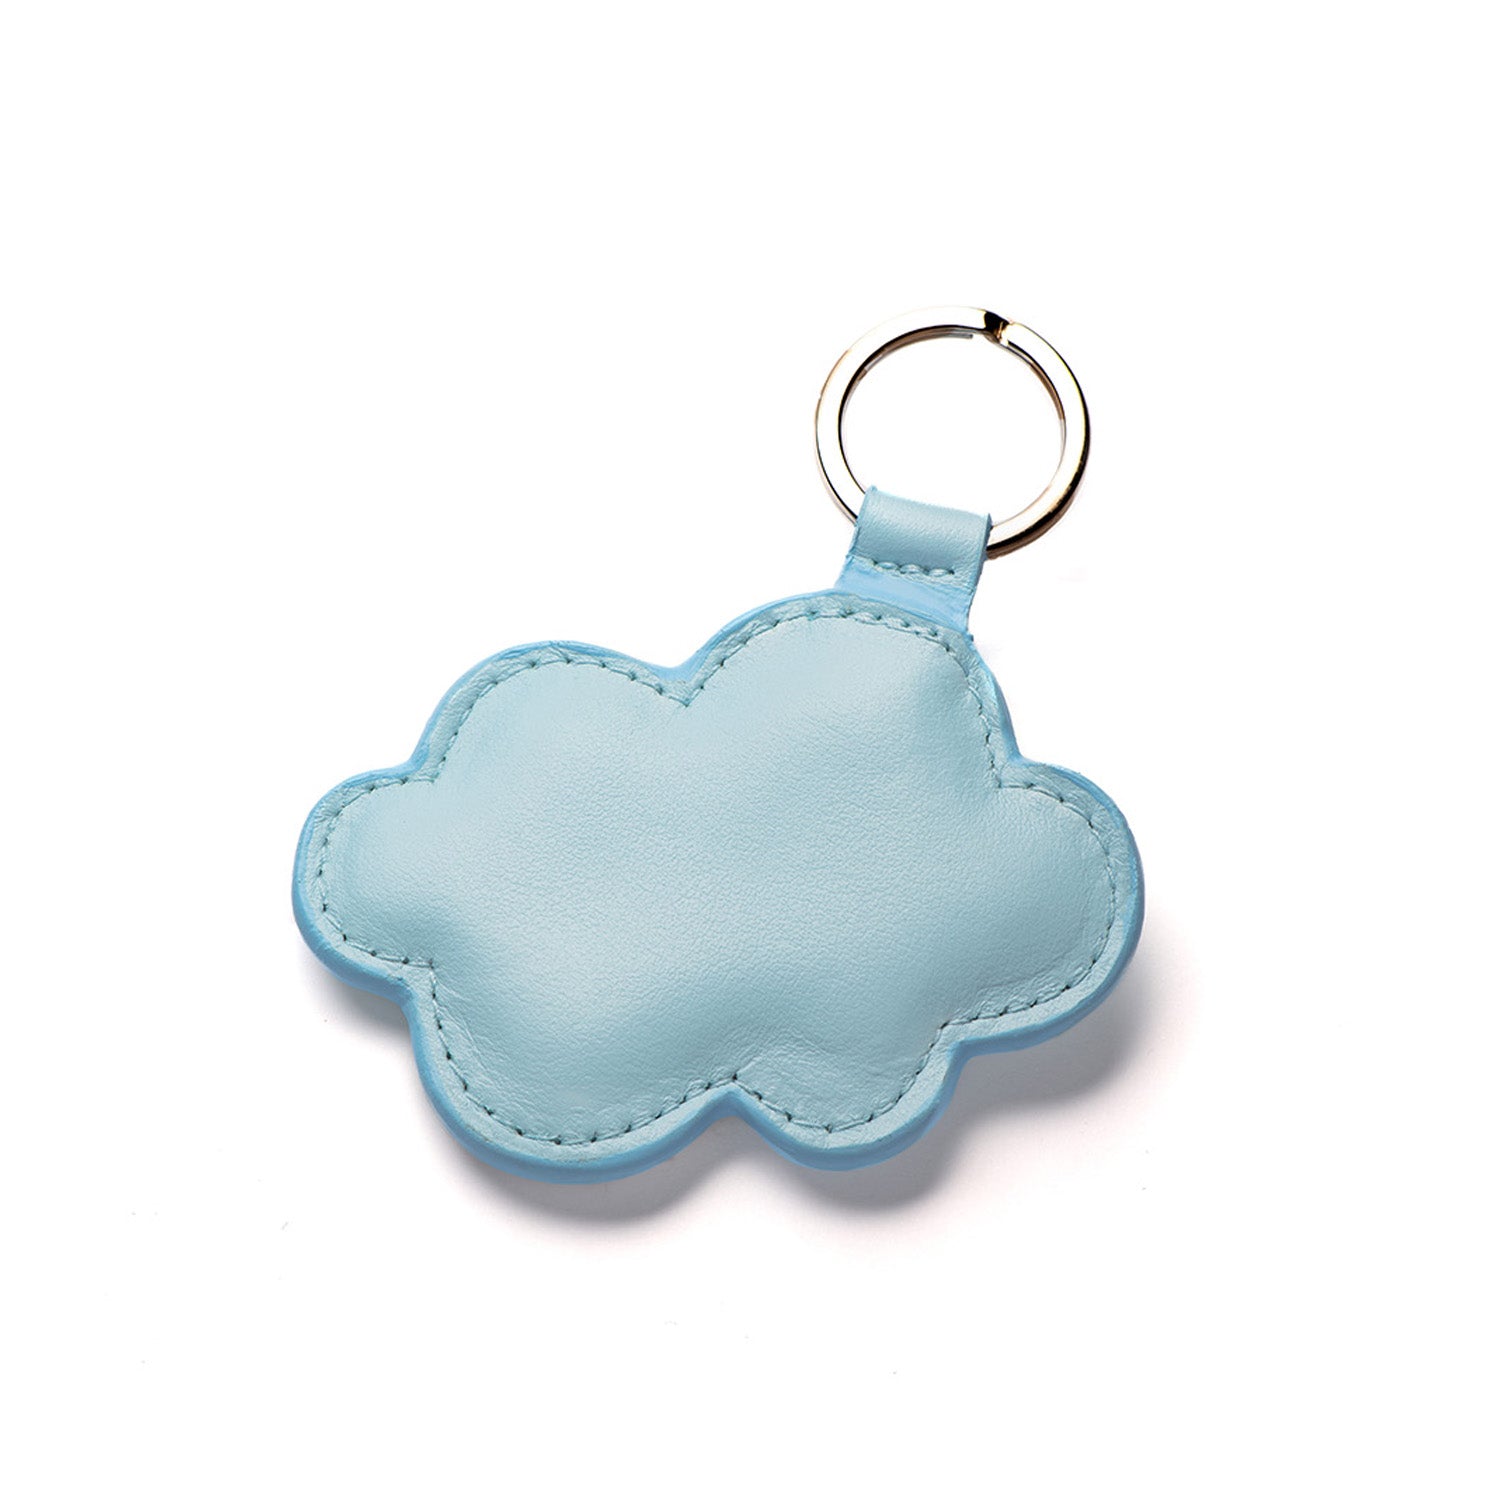 Porte-clé nuage bleu, créateur français, made in Paris.Maroquinerie artisanale.Petite série et mode éco-responsable